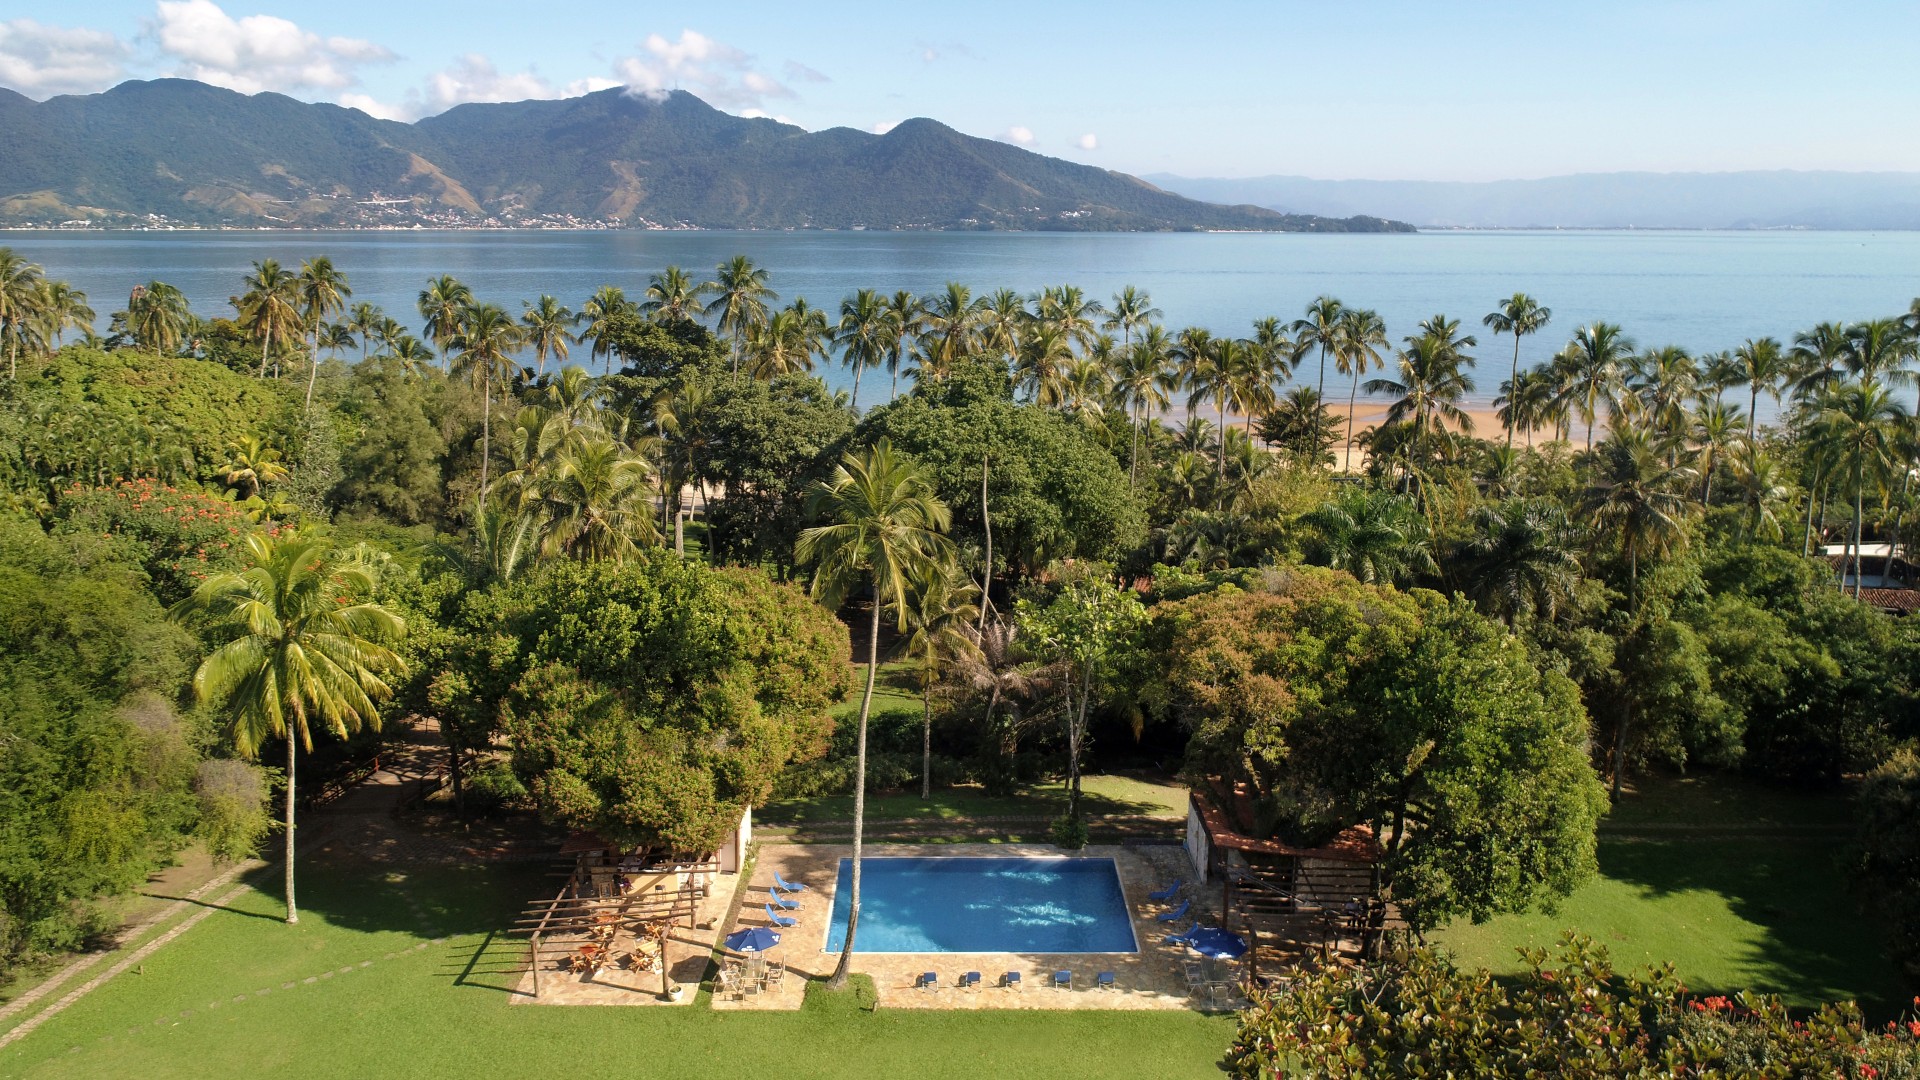 Vista da piscina do hotel Vila Siriúba, em Ilhabela, no litoral norte de SP